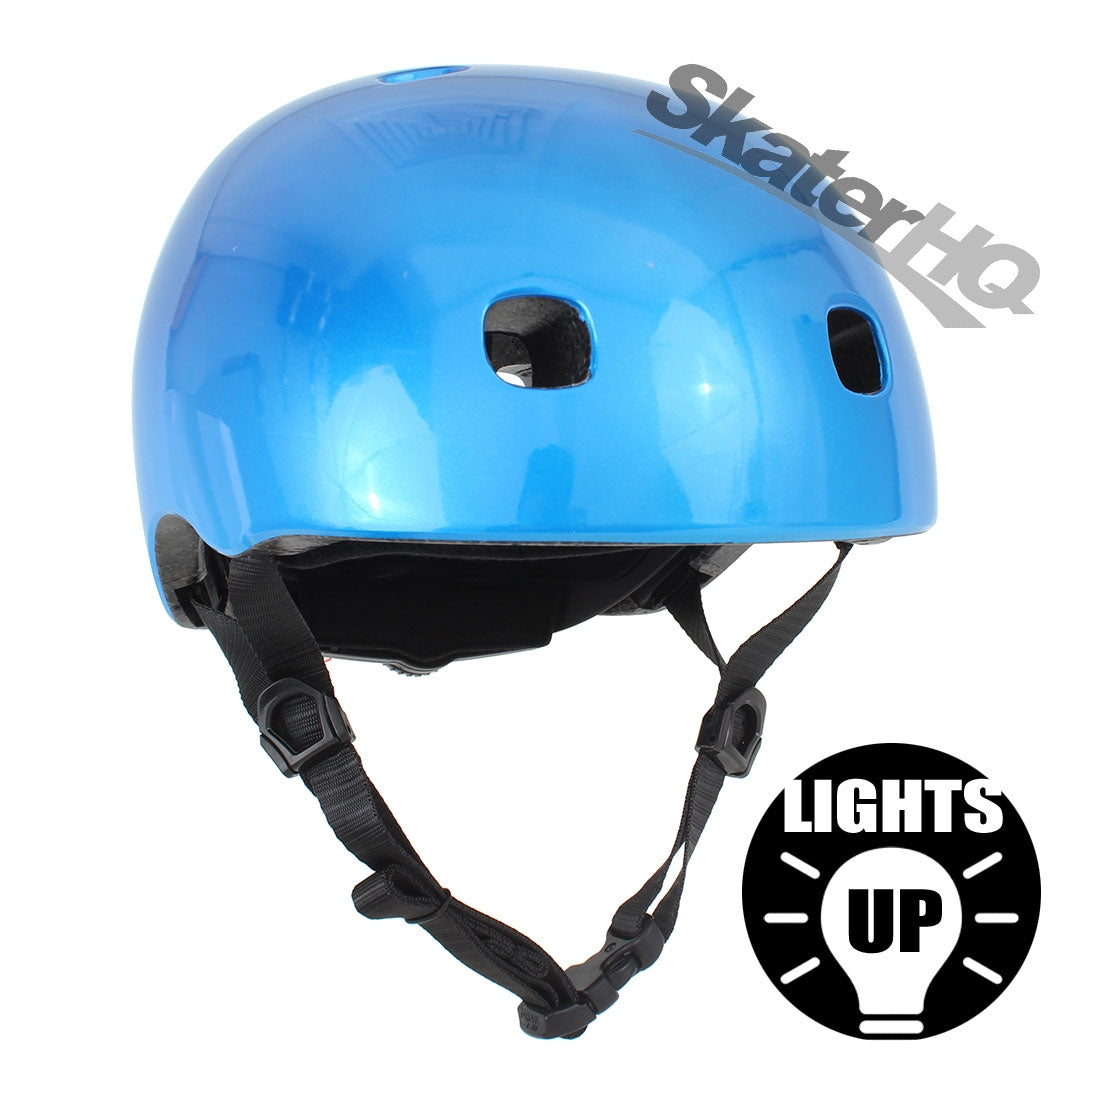 Micro Metallic Blue LED Helmet - Small Helmets